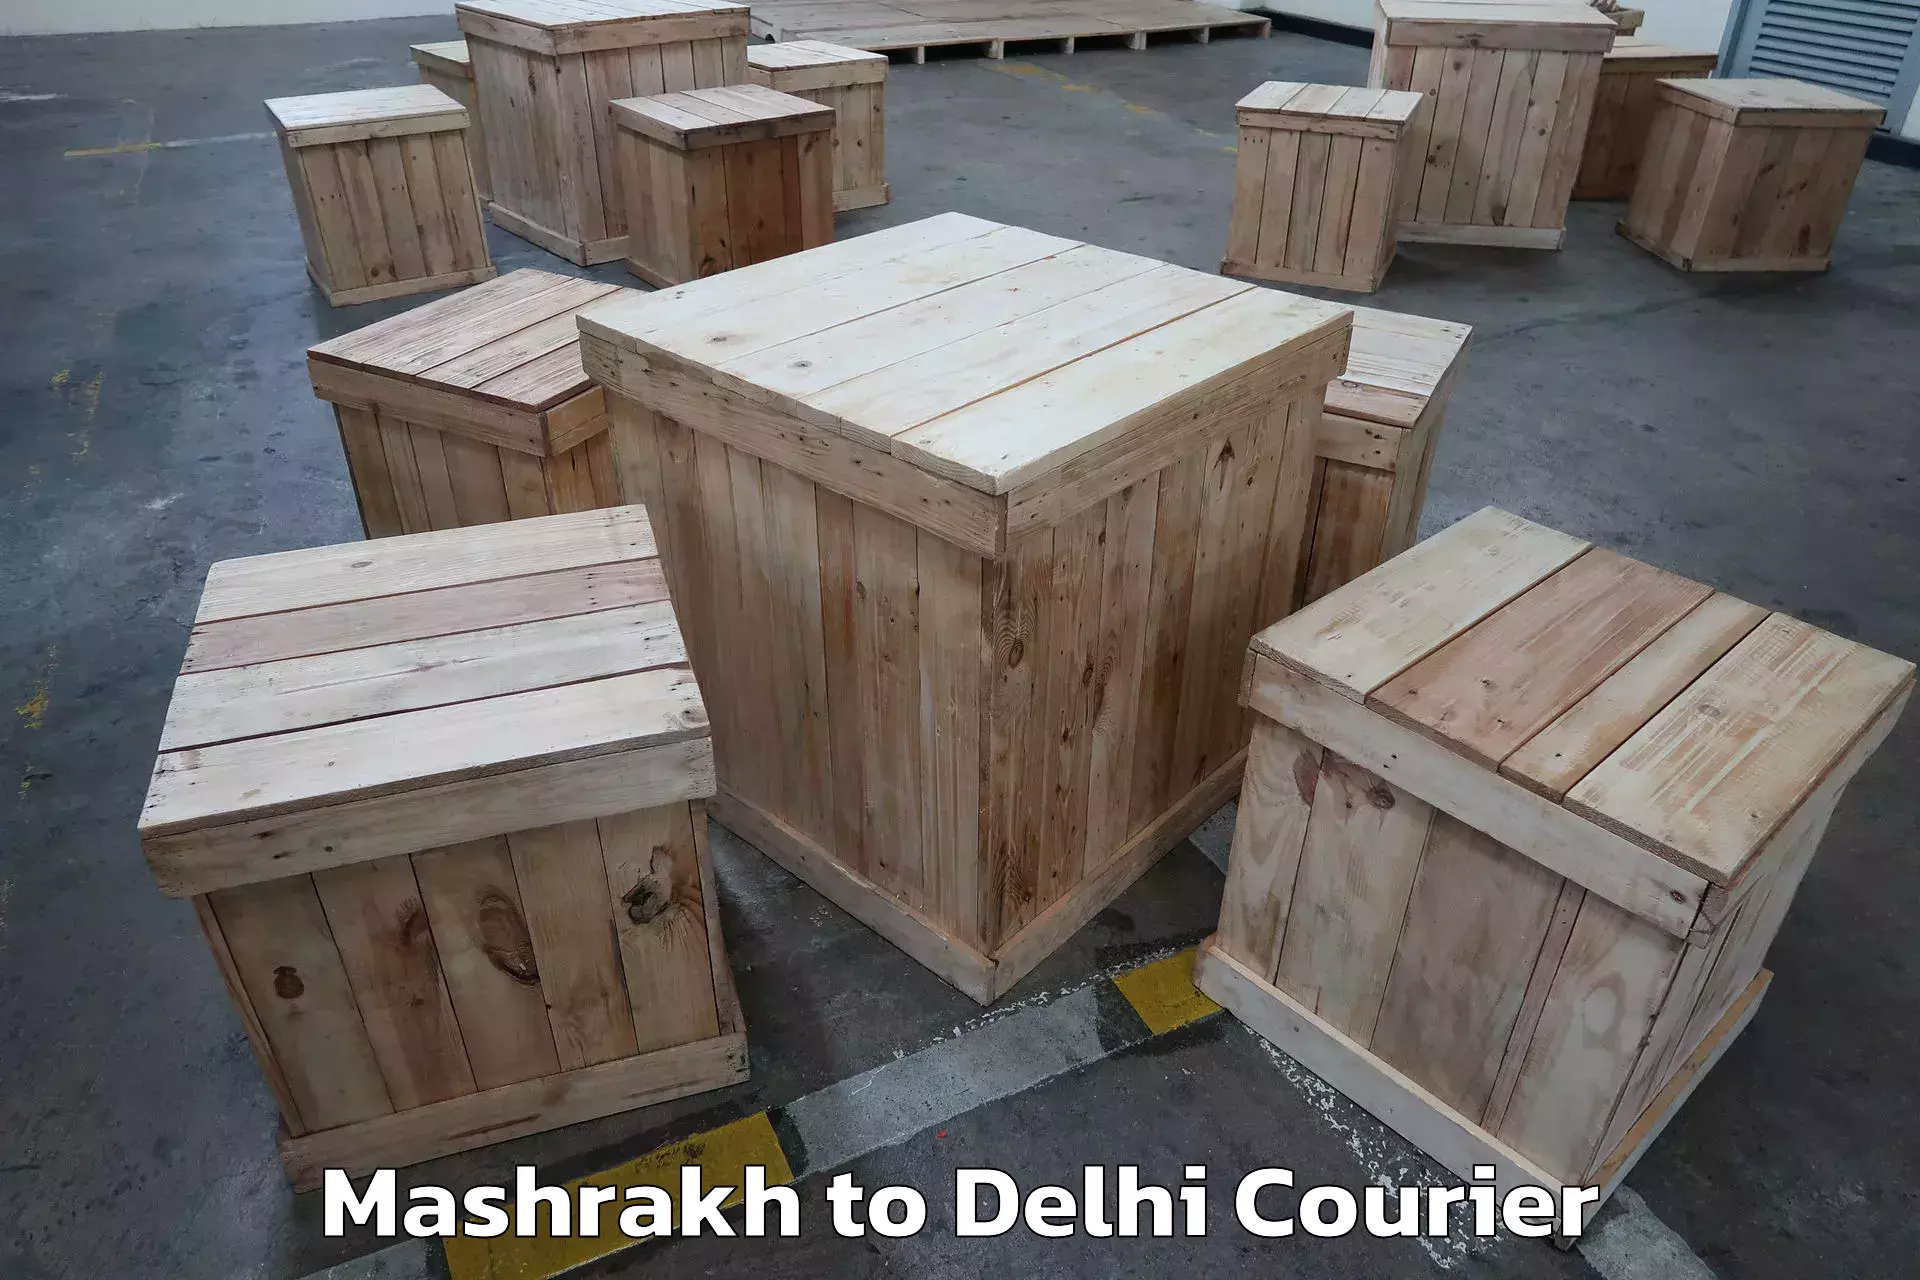 Furniture moving experts Mashrakh to Delhi